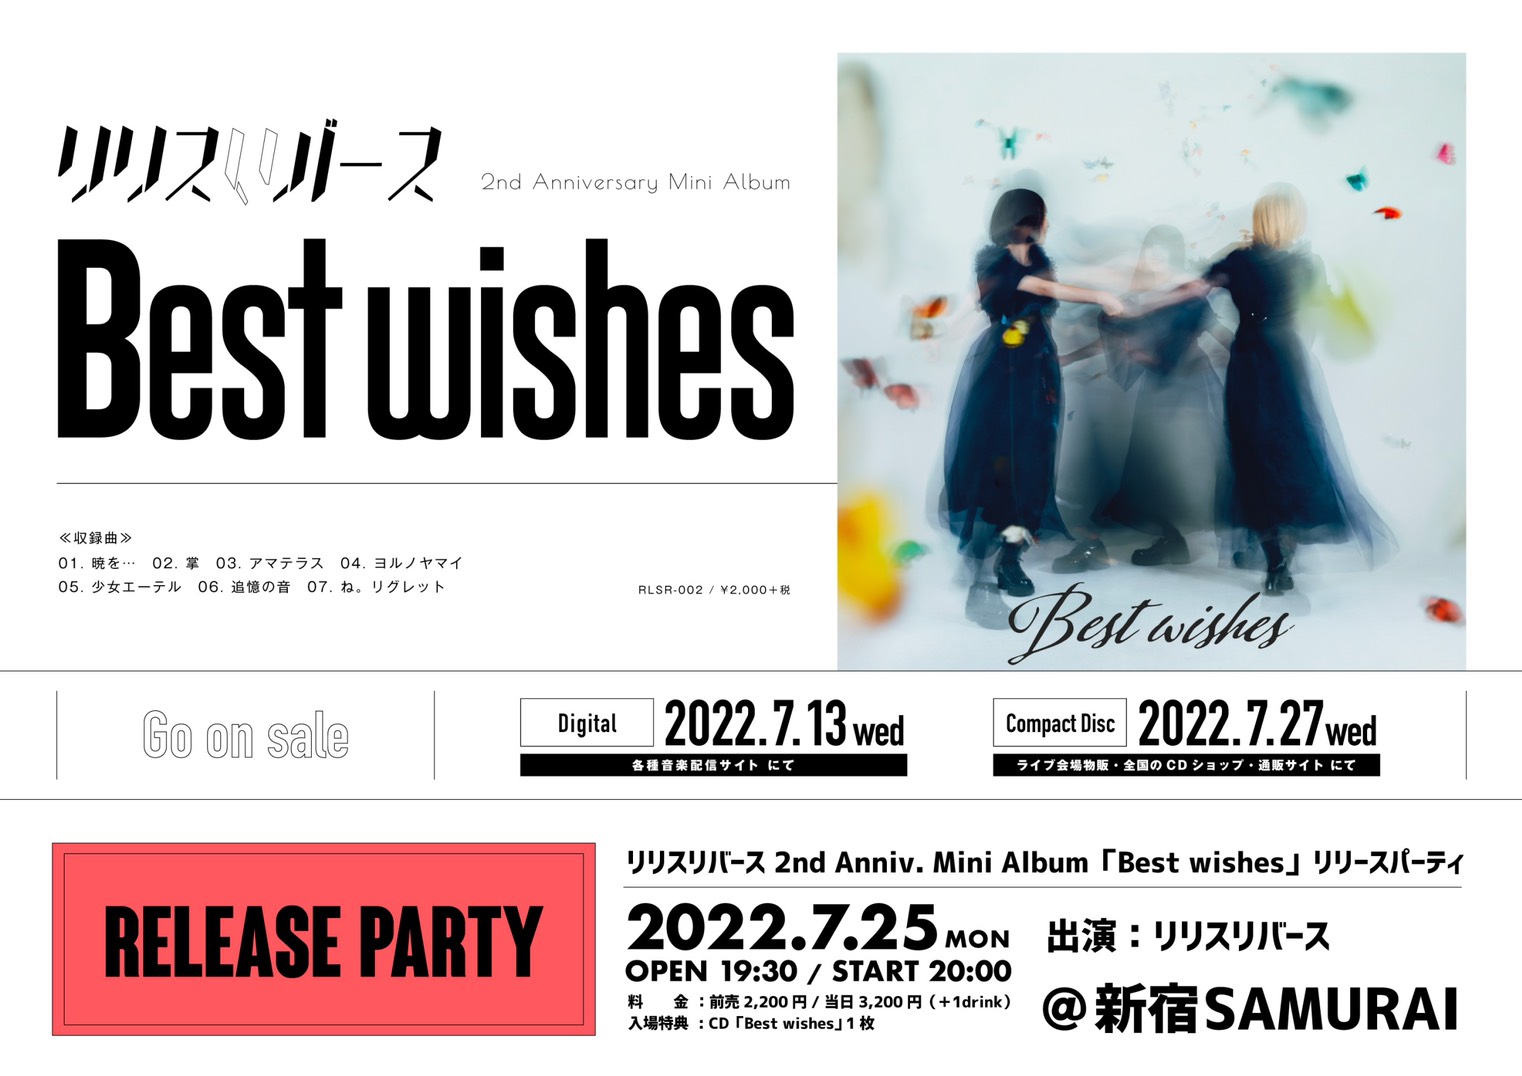 リリスリバース 2nd Anniv. Mini Album 「Best wishes」 リリースパーティ